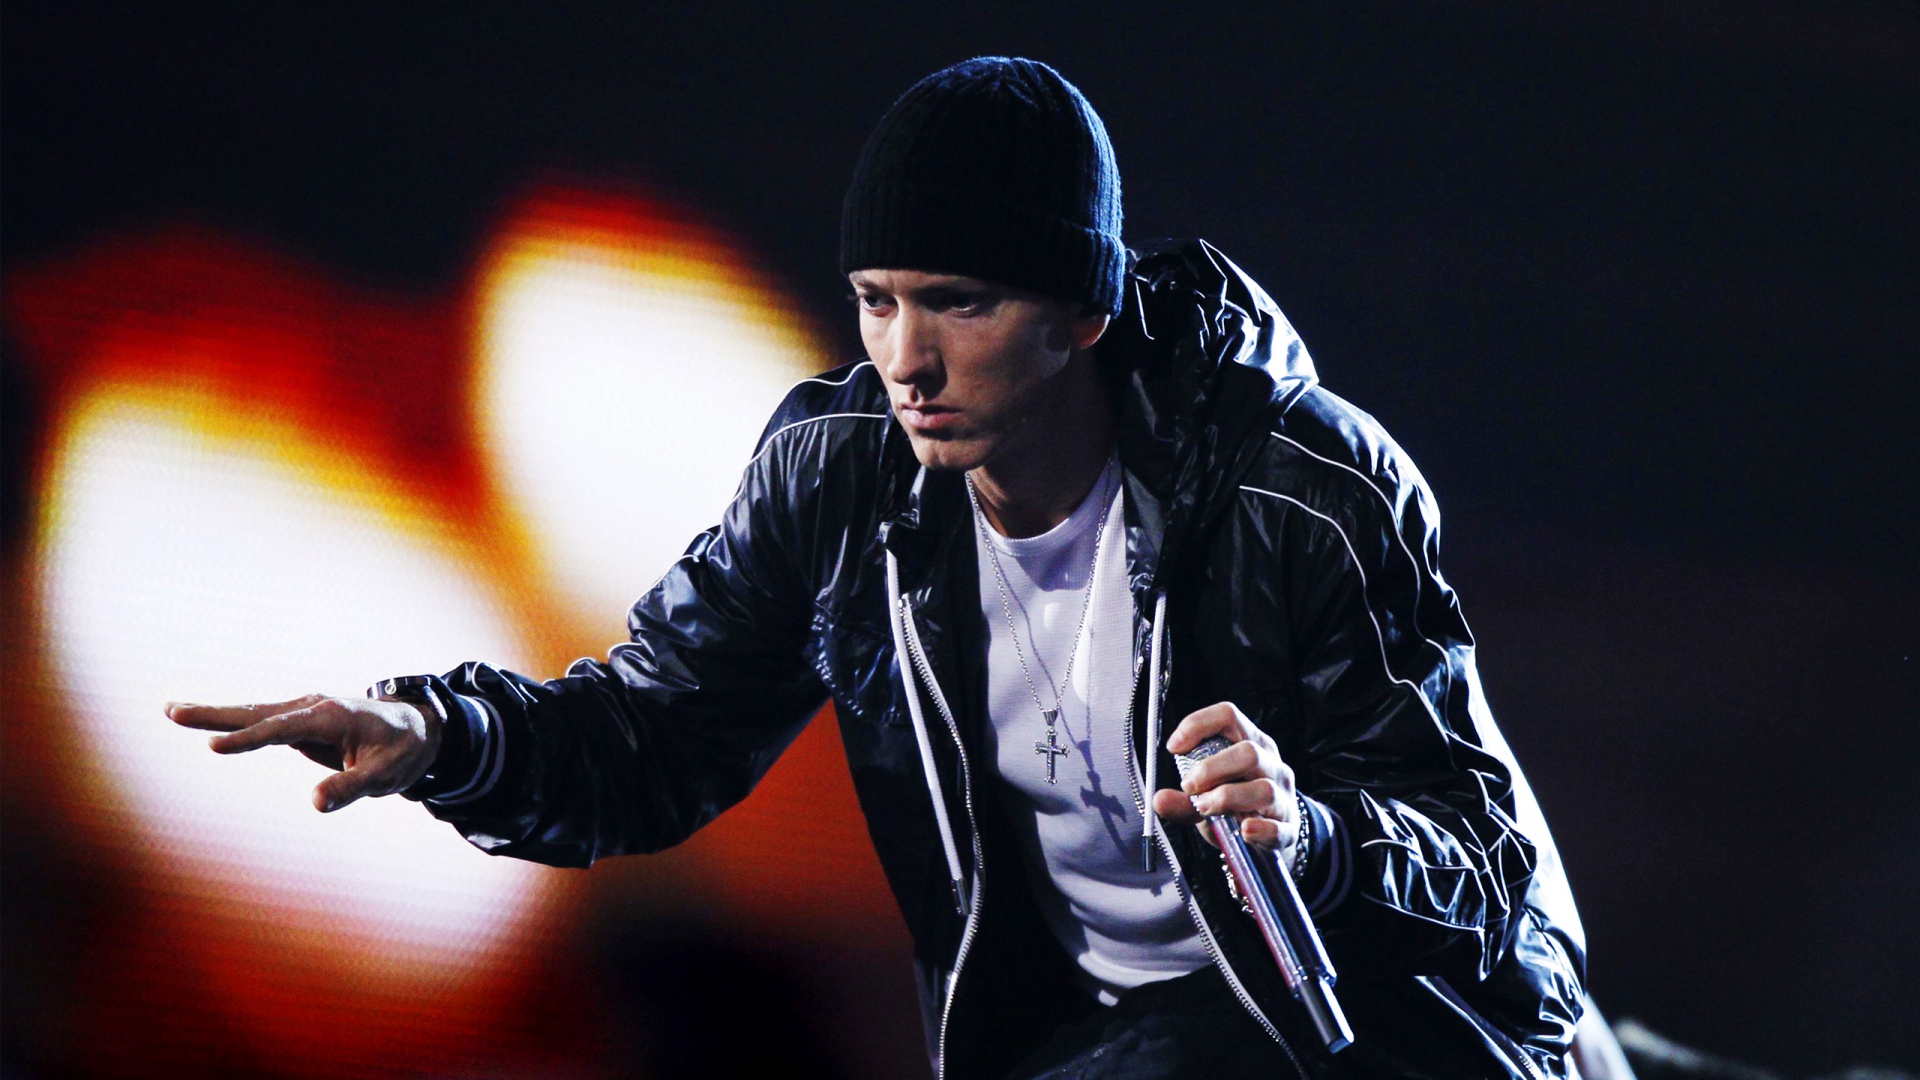 Eminem Singer Wallpaper | PixelsTalk.Net